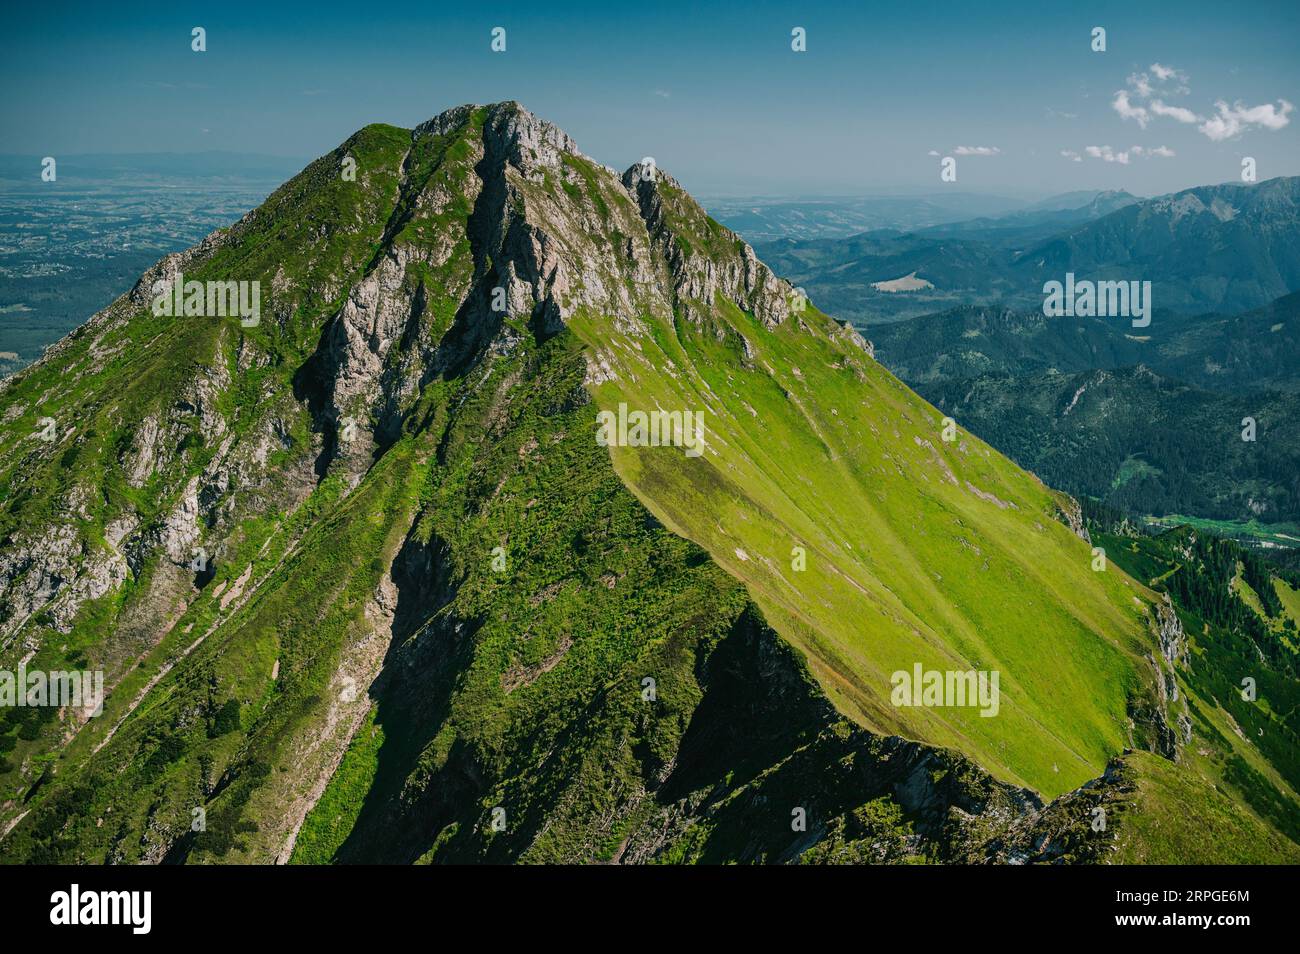 Una escena tranquila en la frontera eslovaco-polaca, donde la verde línea de los Tatras de Belianske se extiende hasta la distancia Foto de stock